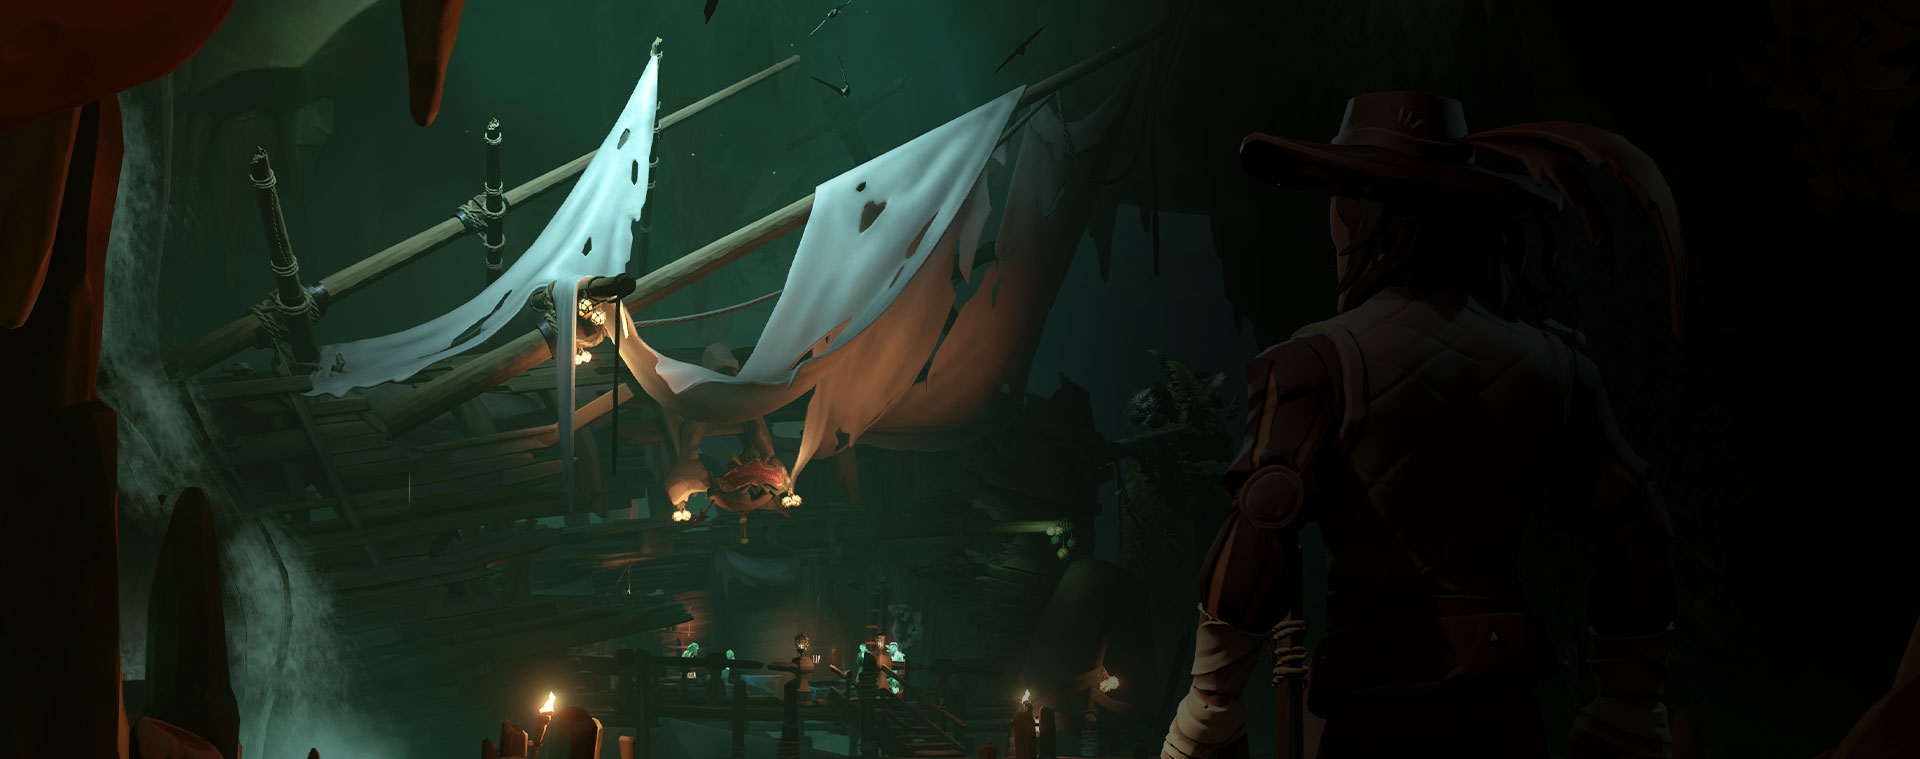 Персонаж из Sea of Thieves смотрит на обломки разбитого корабля